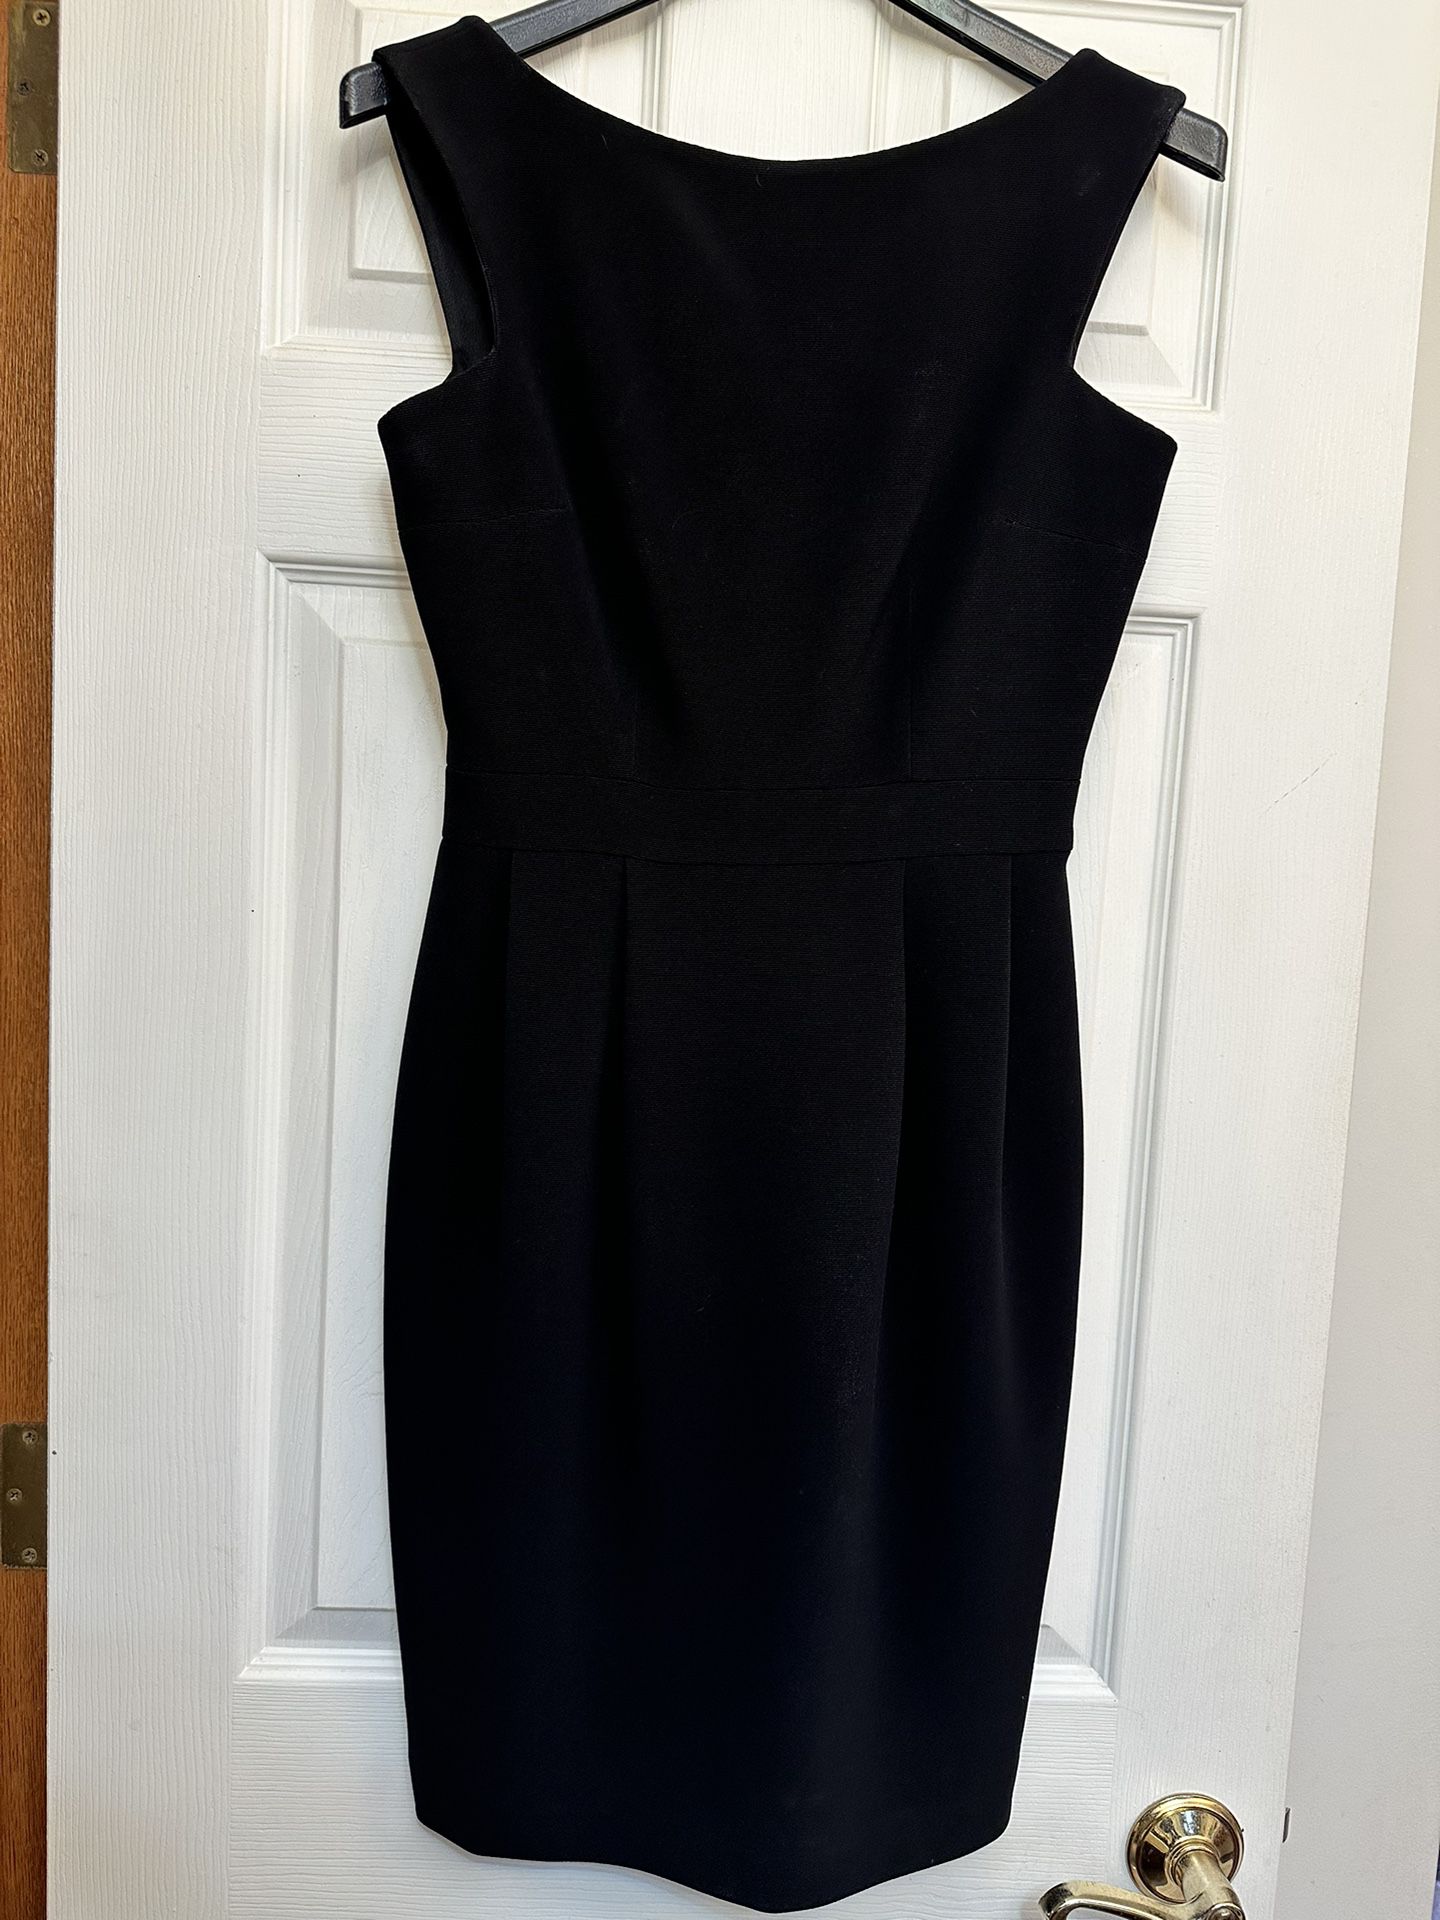 Nordstrom‘S Little Black Dress